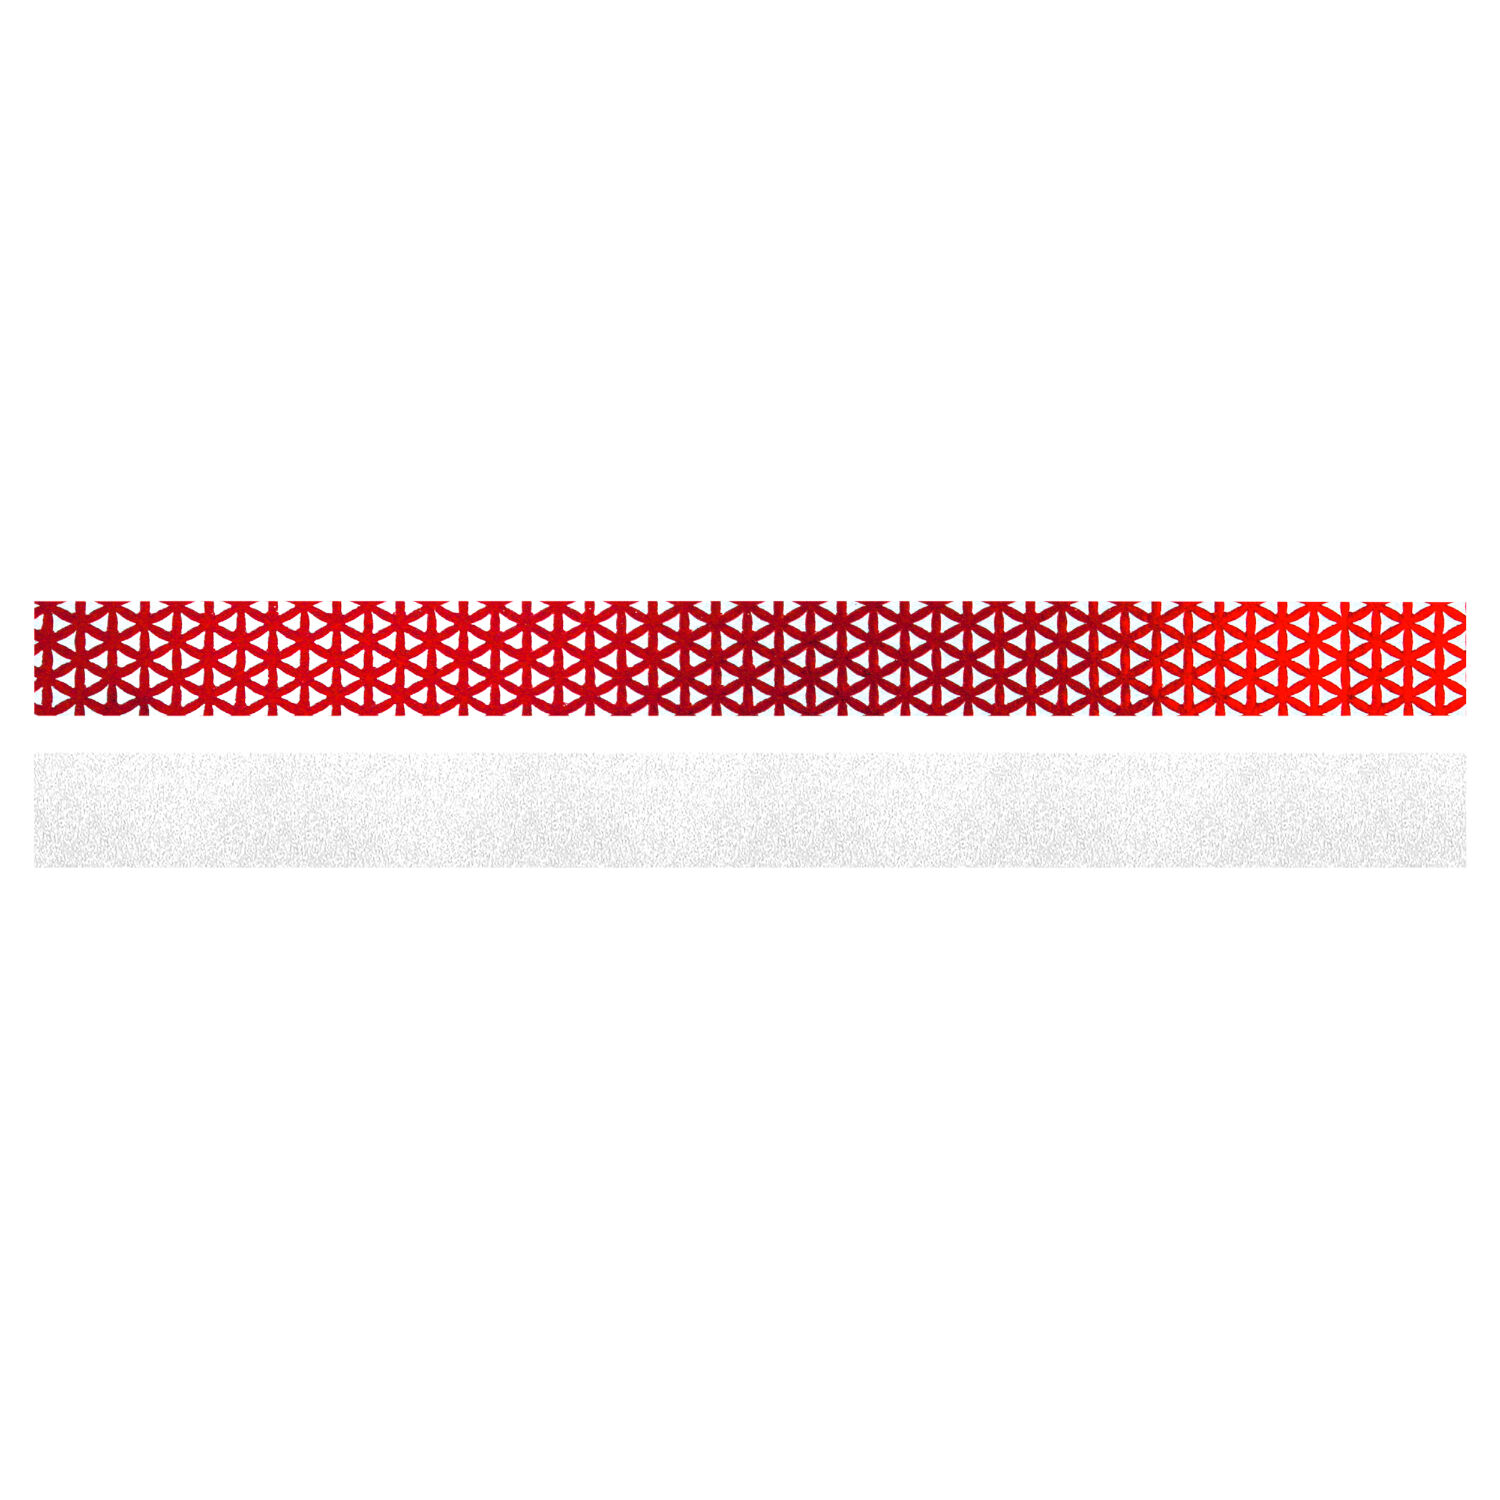 NEU Fröbelsterne Weiß-Rot, 80 Streifen, 2 Designs für 20 Sterne 6,5cm -  Faltblätter, Origami & Flechten Papiere & Co. Produkte 